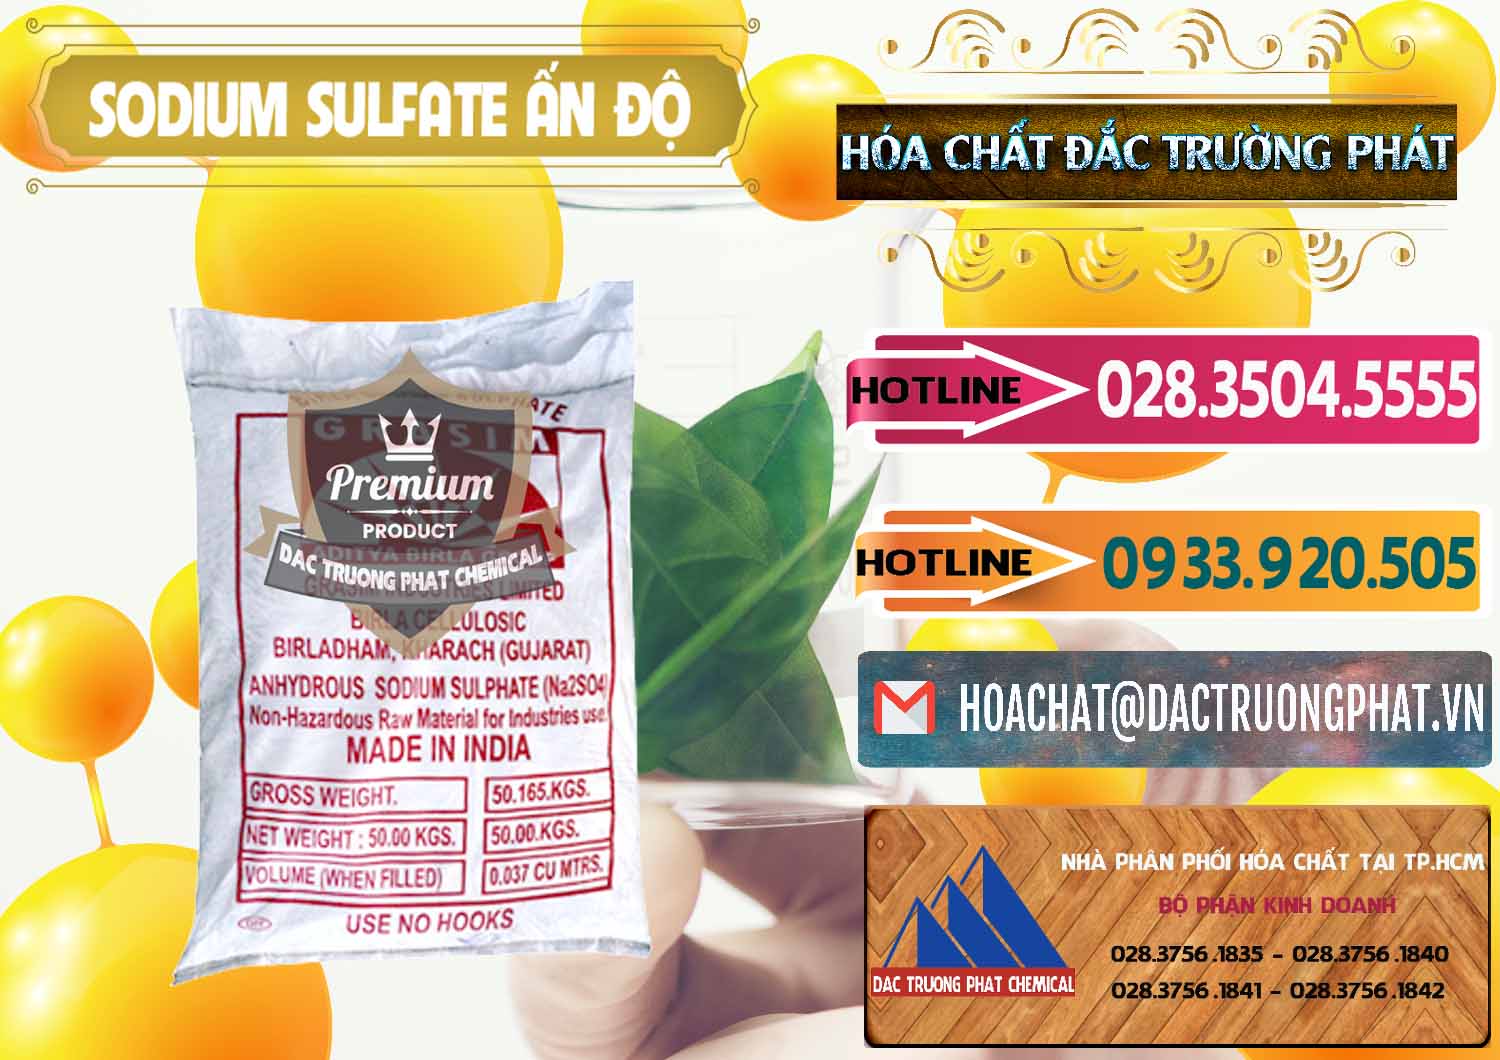 Chuyên cung cấp _ bán Sodium Sulphate - Muối Sunfat Na2SO4 Aditya Birla Grasim Ấn Độ India - 0462 - Nơi phân phối ( cung cấp ) hóa chất tại TP.HCM - dactruongphat.vn